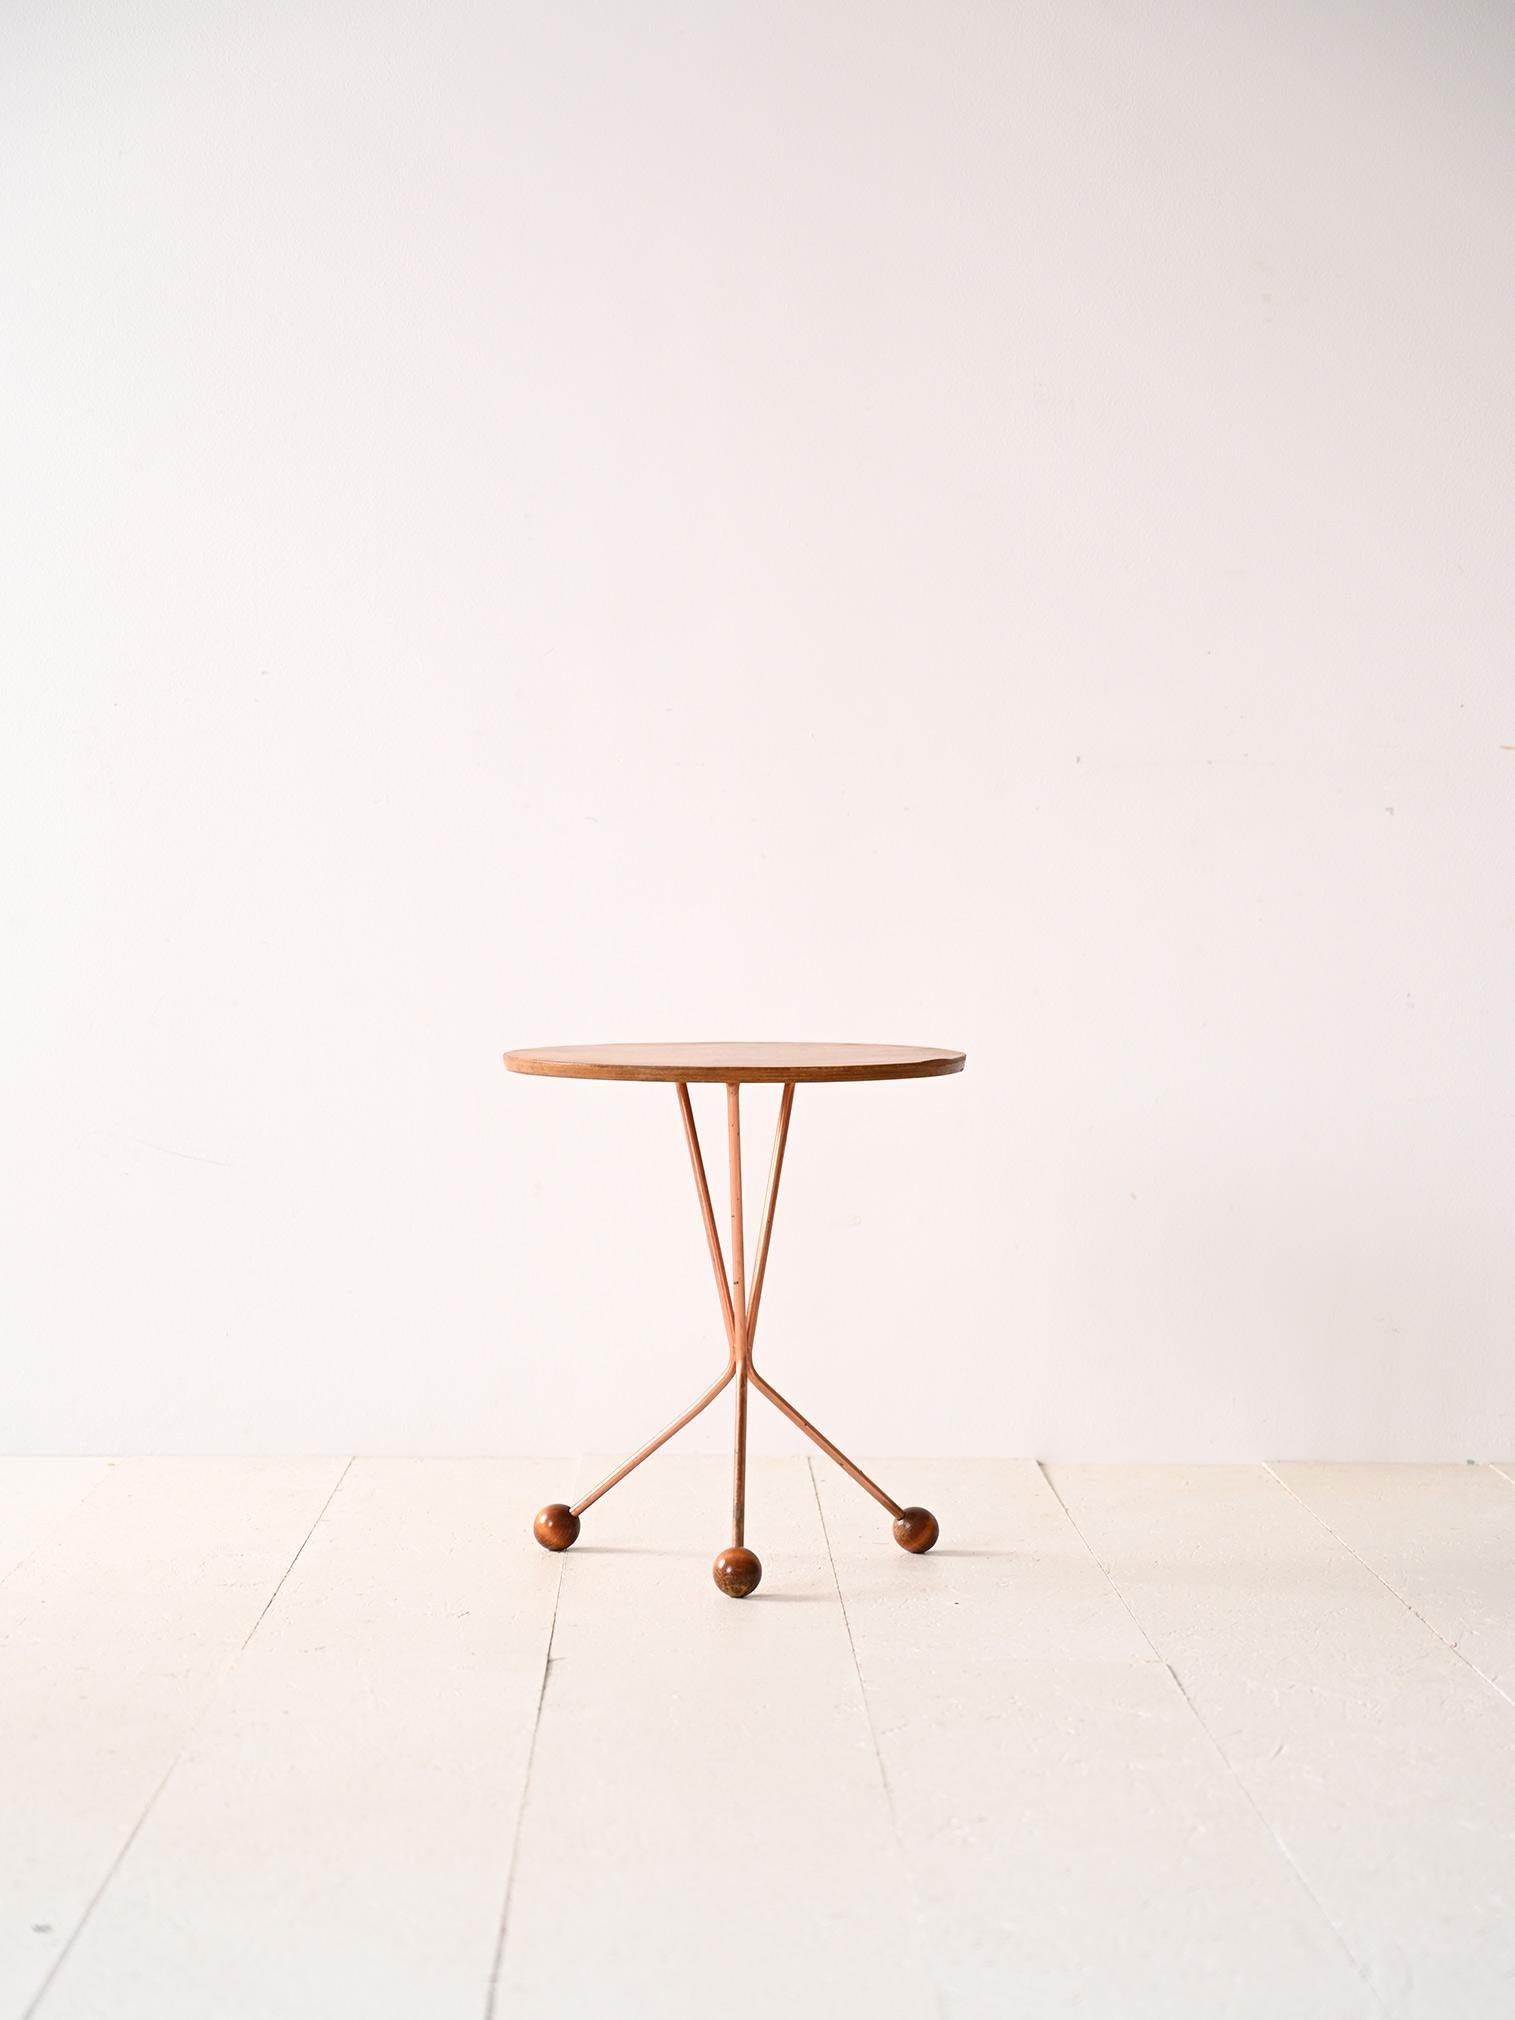 Table basse suédoise conçue par Albert Larsson pour la société Timbro.

Le design original présente un plateau rond et des pieds en métal avec des pieds sphériques en bois de teck.
Une pièce de modernisme au goût nordique qui saura caractériser la